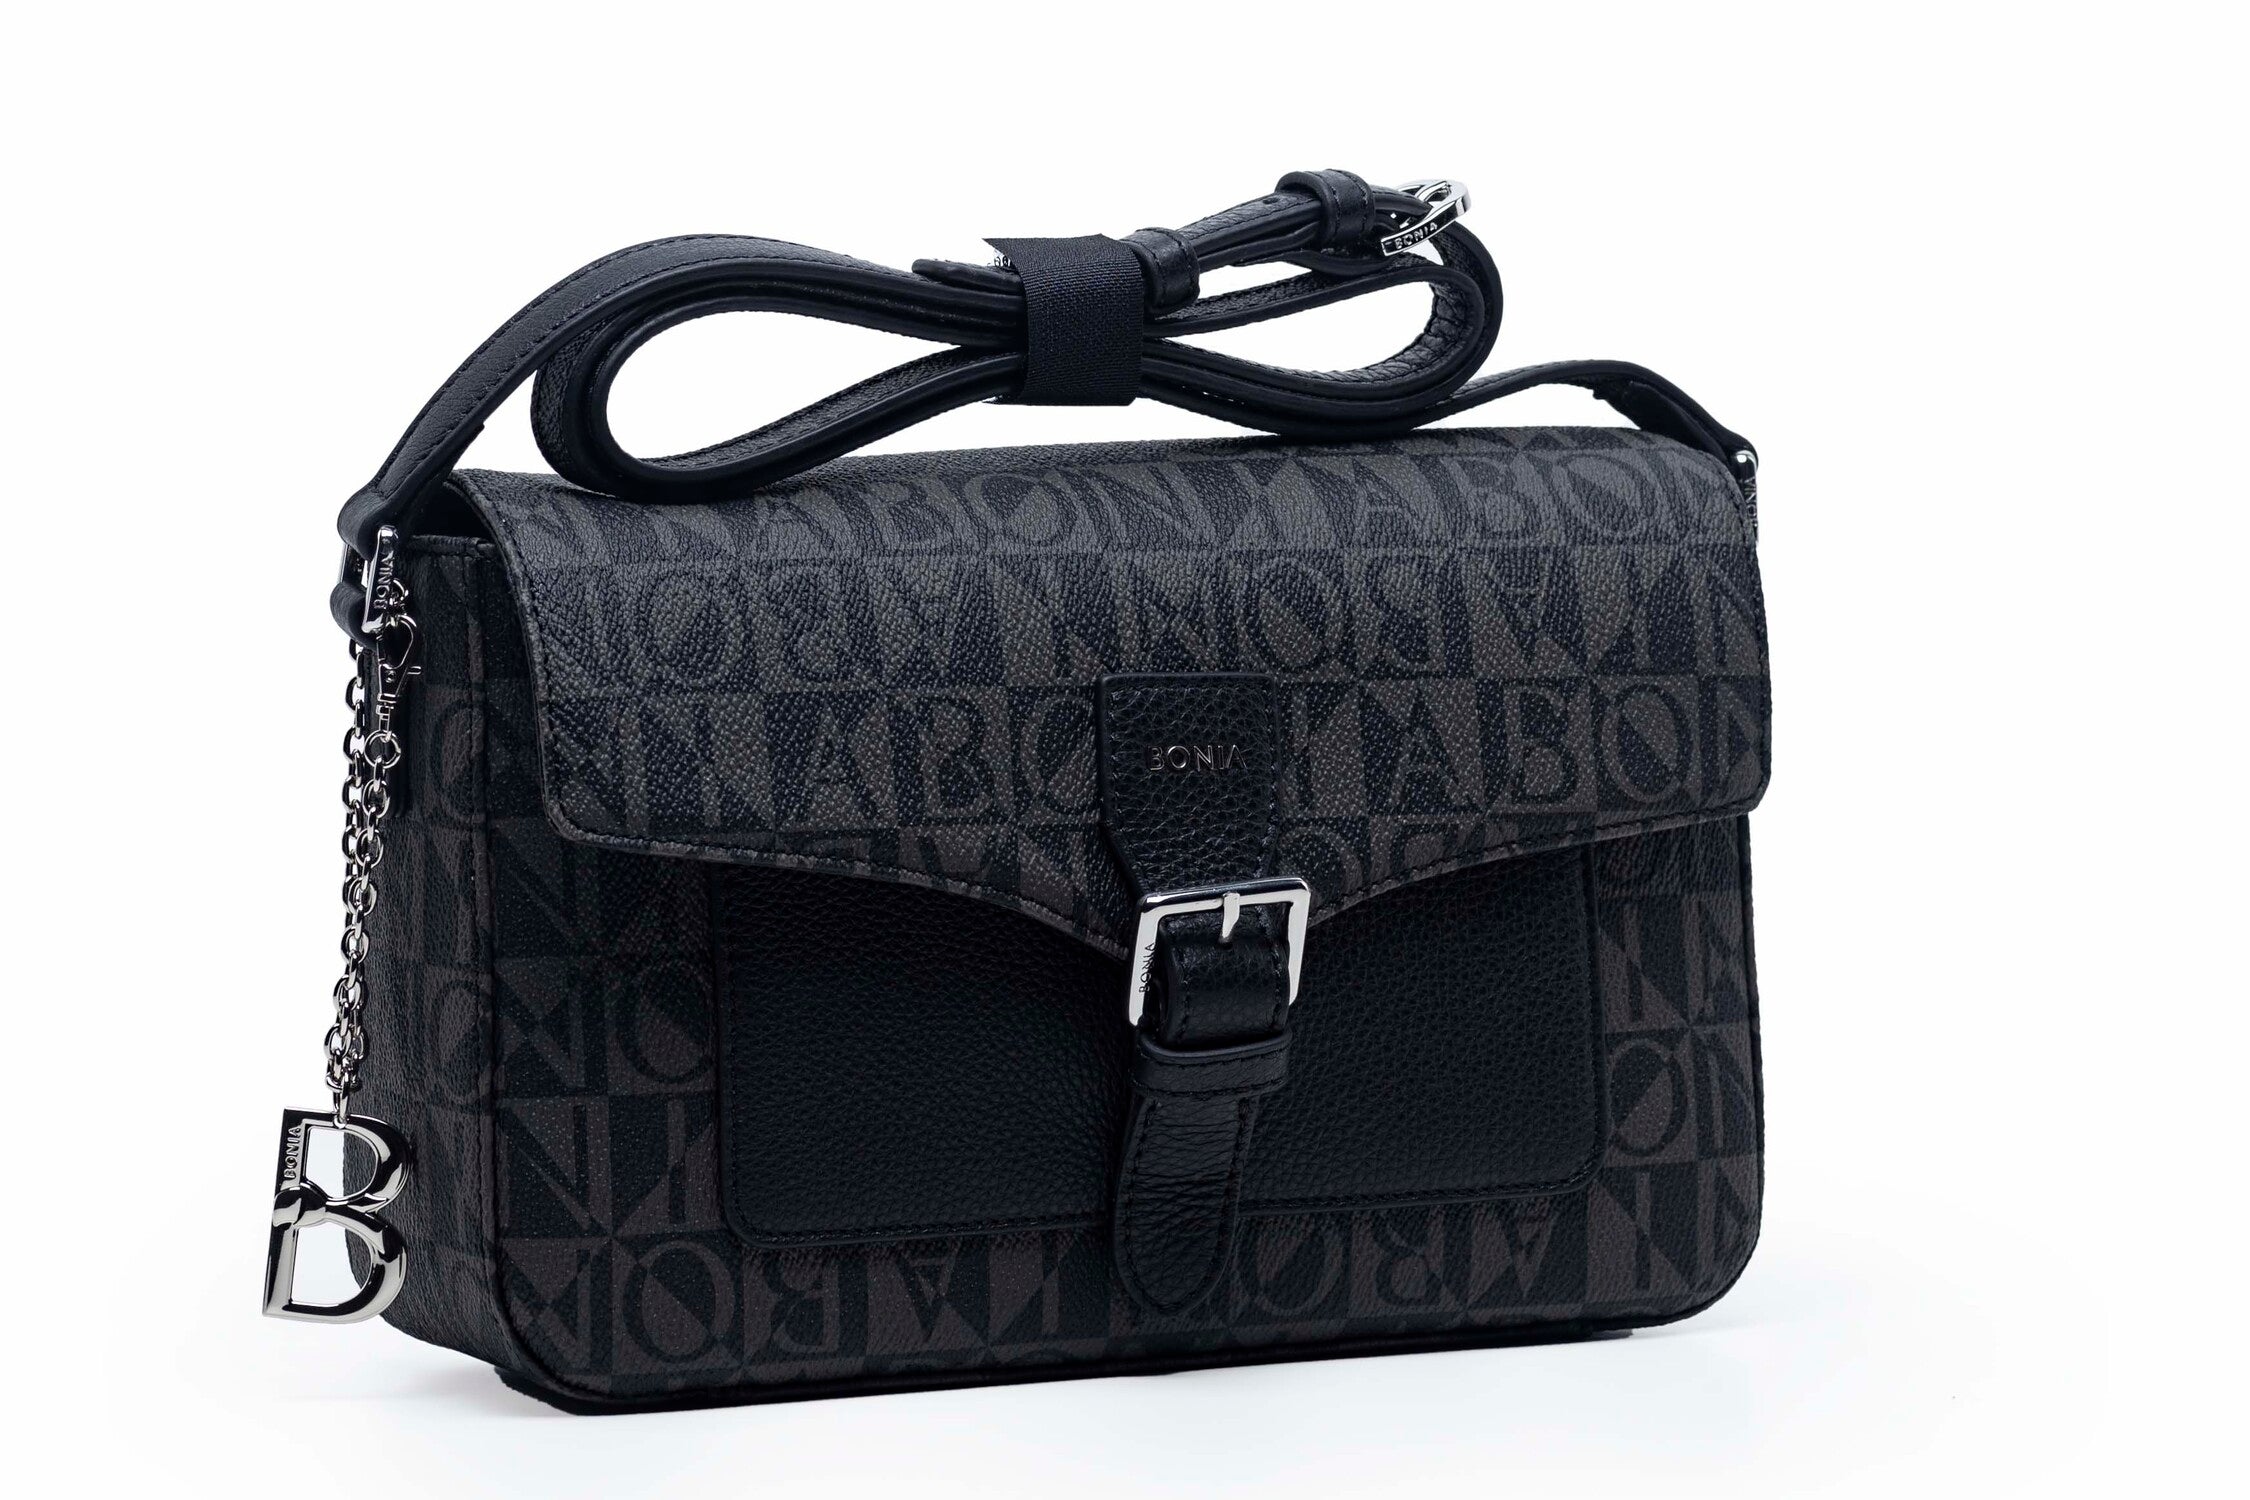 BONIA Handbag Shoulder Bag 2in1 #9809 – TasBatam168